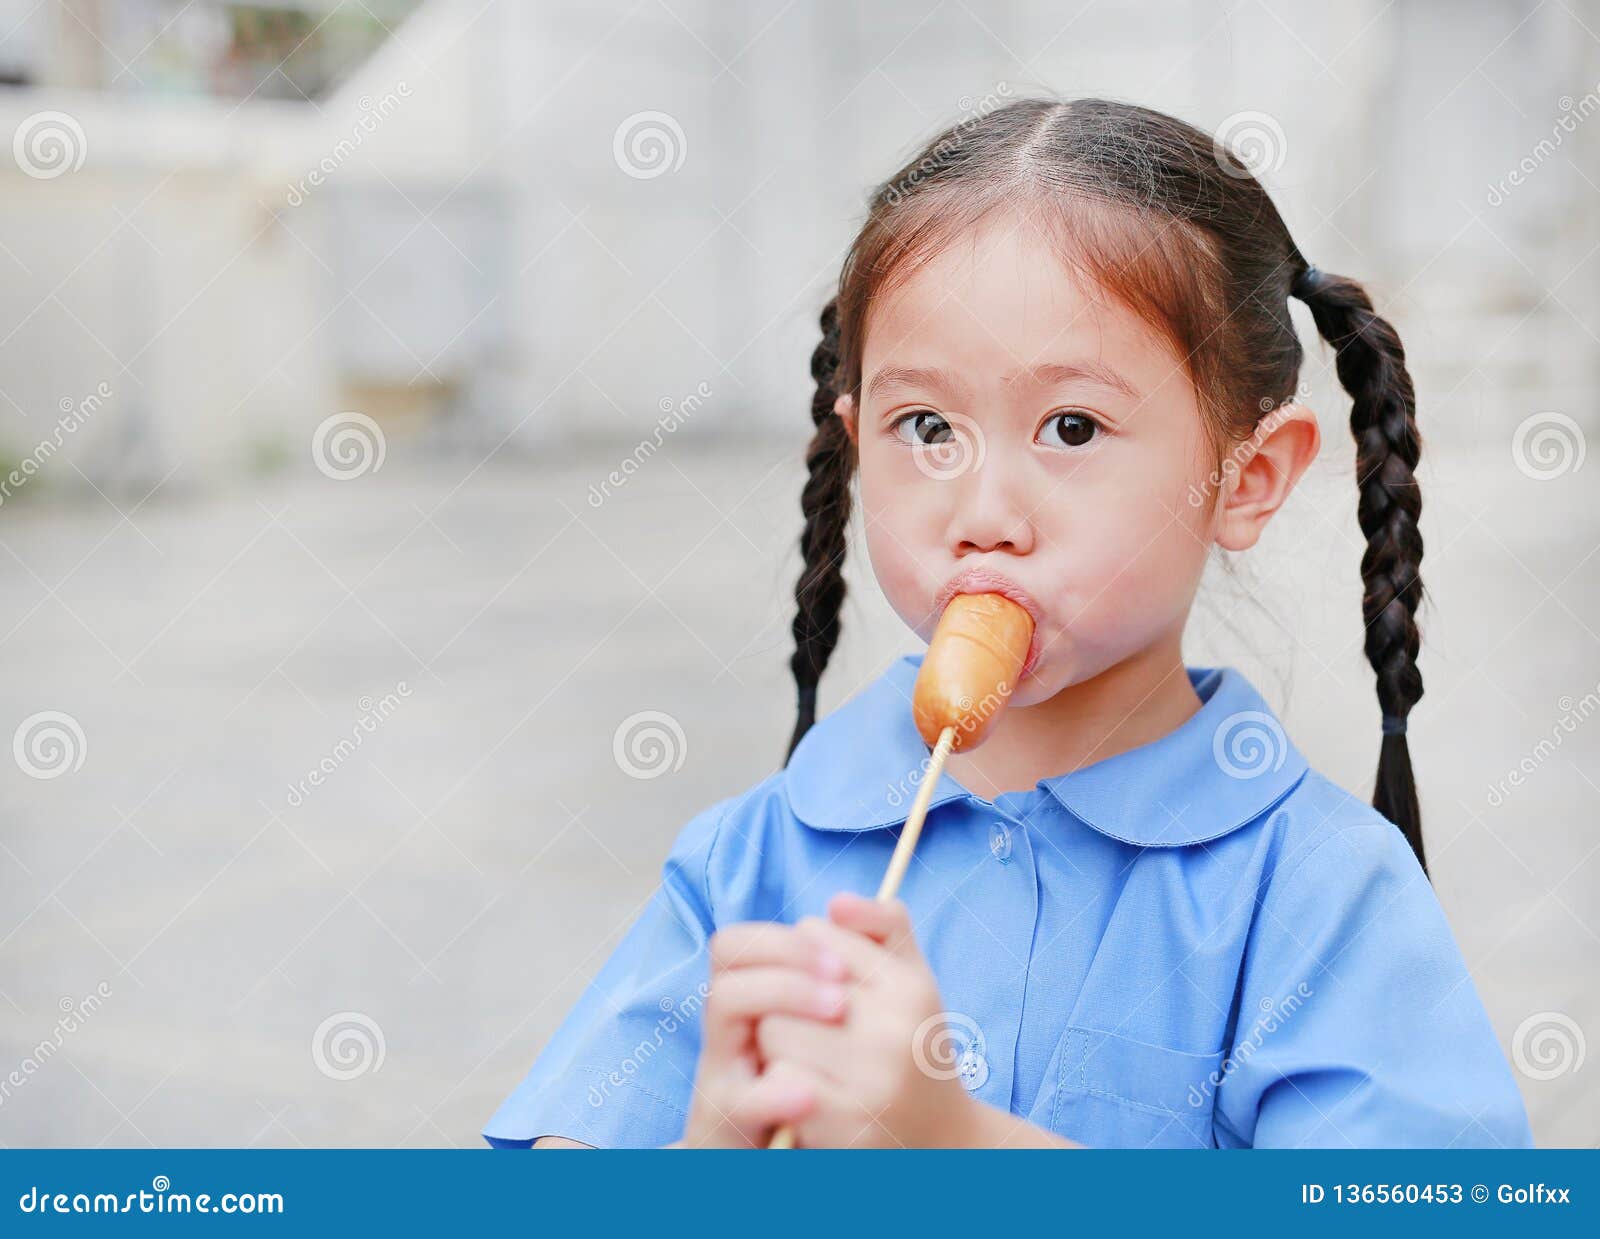 Το πορτρέτο λίγου ασιατικού κοριτσιού παιδιών στη σχολική στολή απολαμβάνει  το νόστιμο λουκάνικο Στοκ Εικόνα - εικόνα από childhood, babylonia:  136560453